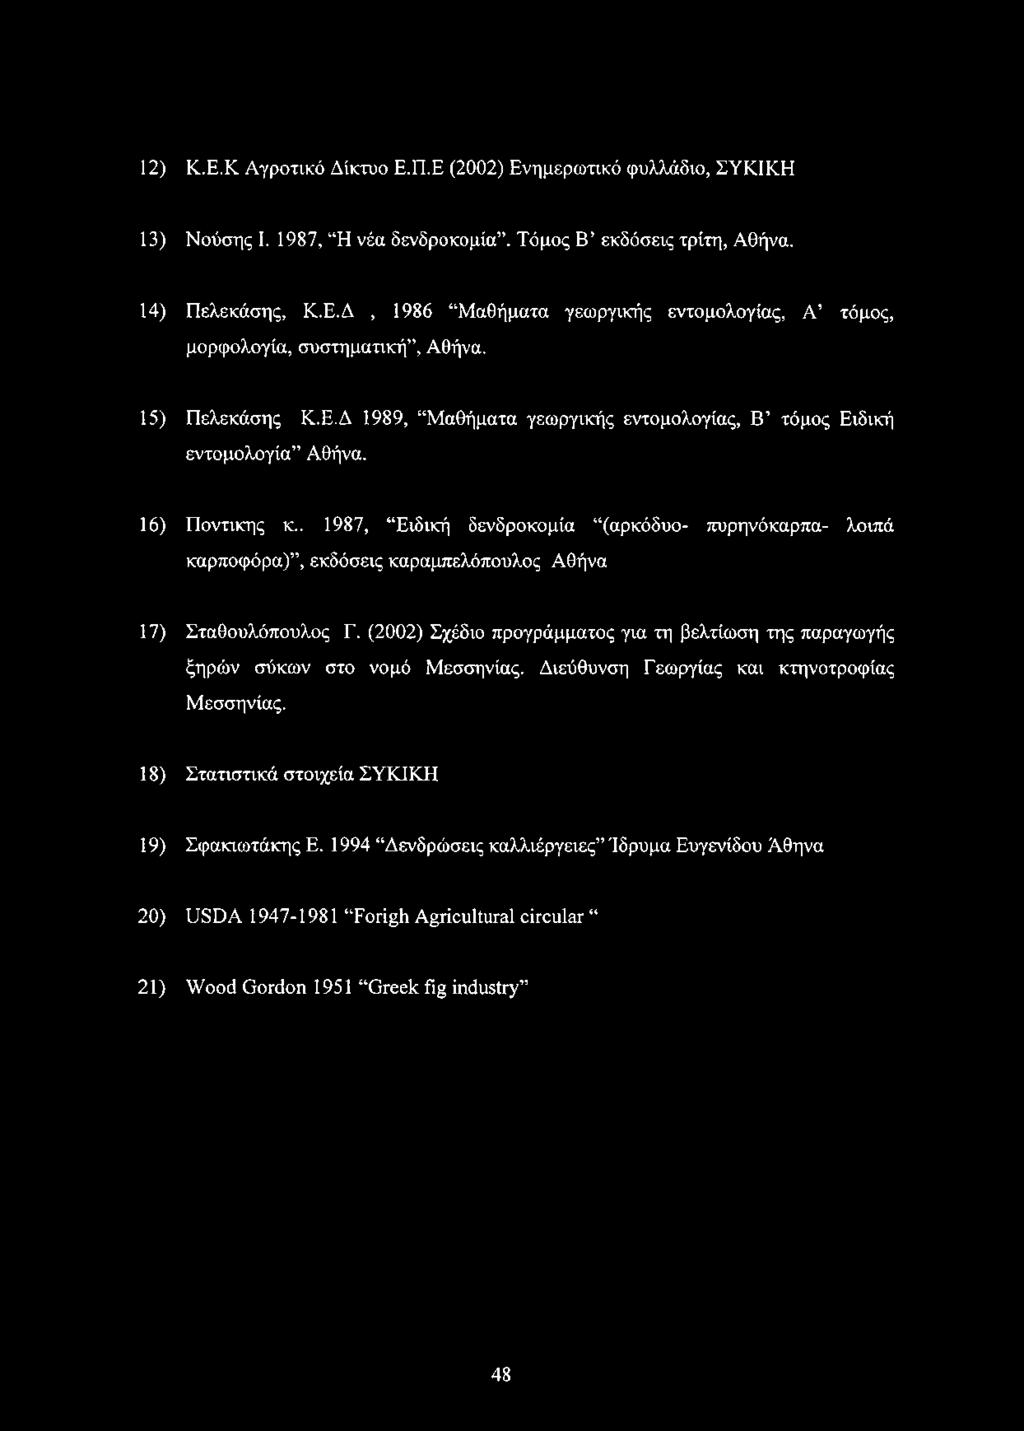 . 1987, Ειδική δενδροκομία (αρκόδυο- πυρηνόκαρπα- λοιπά καρποφόρα), εκδόσεις καραμπελόπουλος Αθήνα 17) Σταθουλόπουλος Γ.